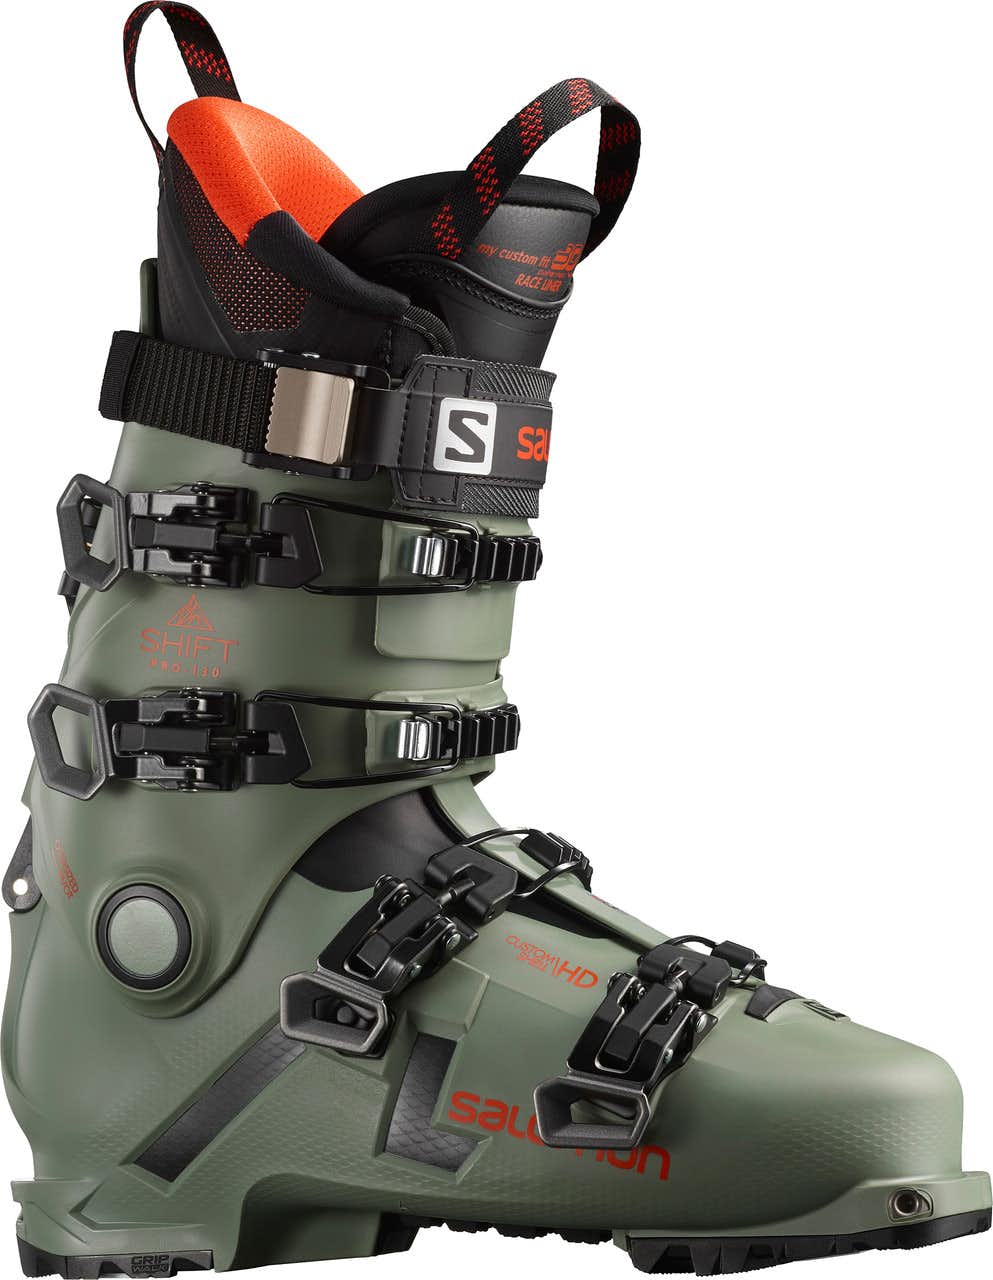 Shift Pro 130 AT Ski Boots Oil Green/Black/Orange